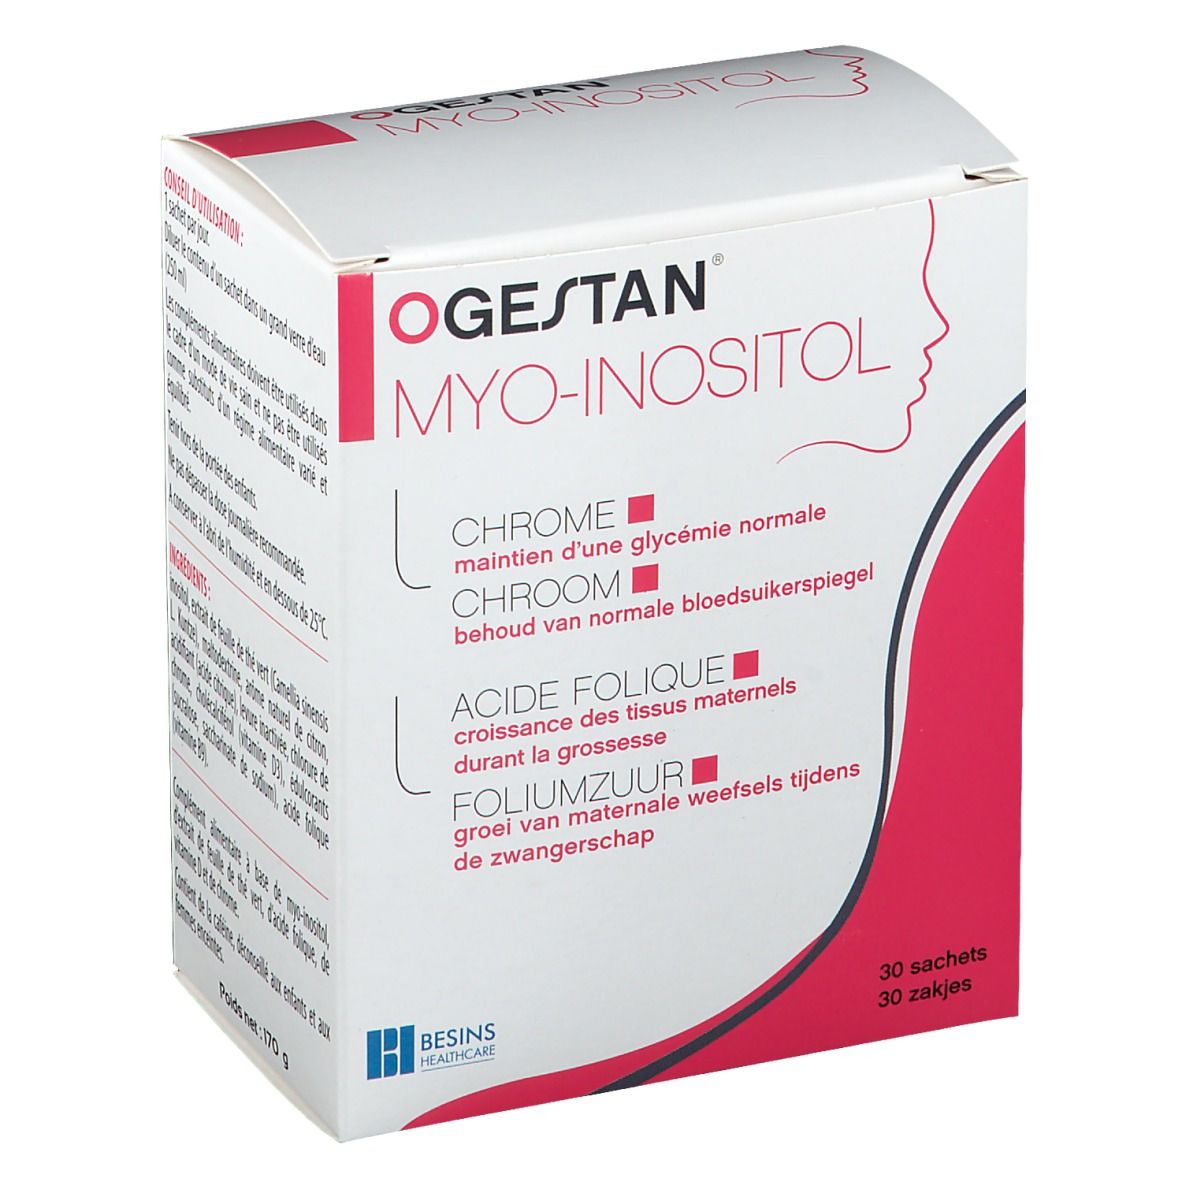 Ogestan® Myo-Inositol